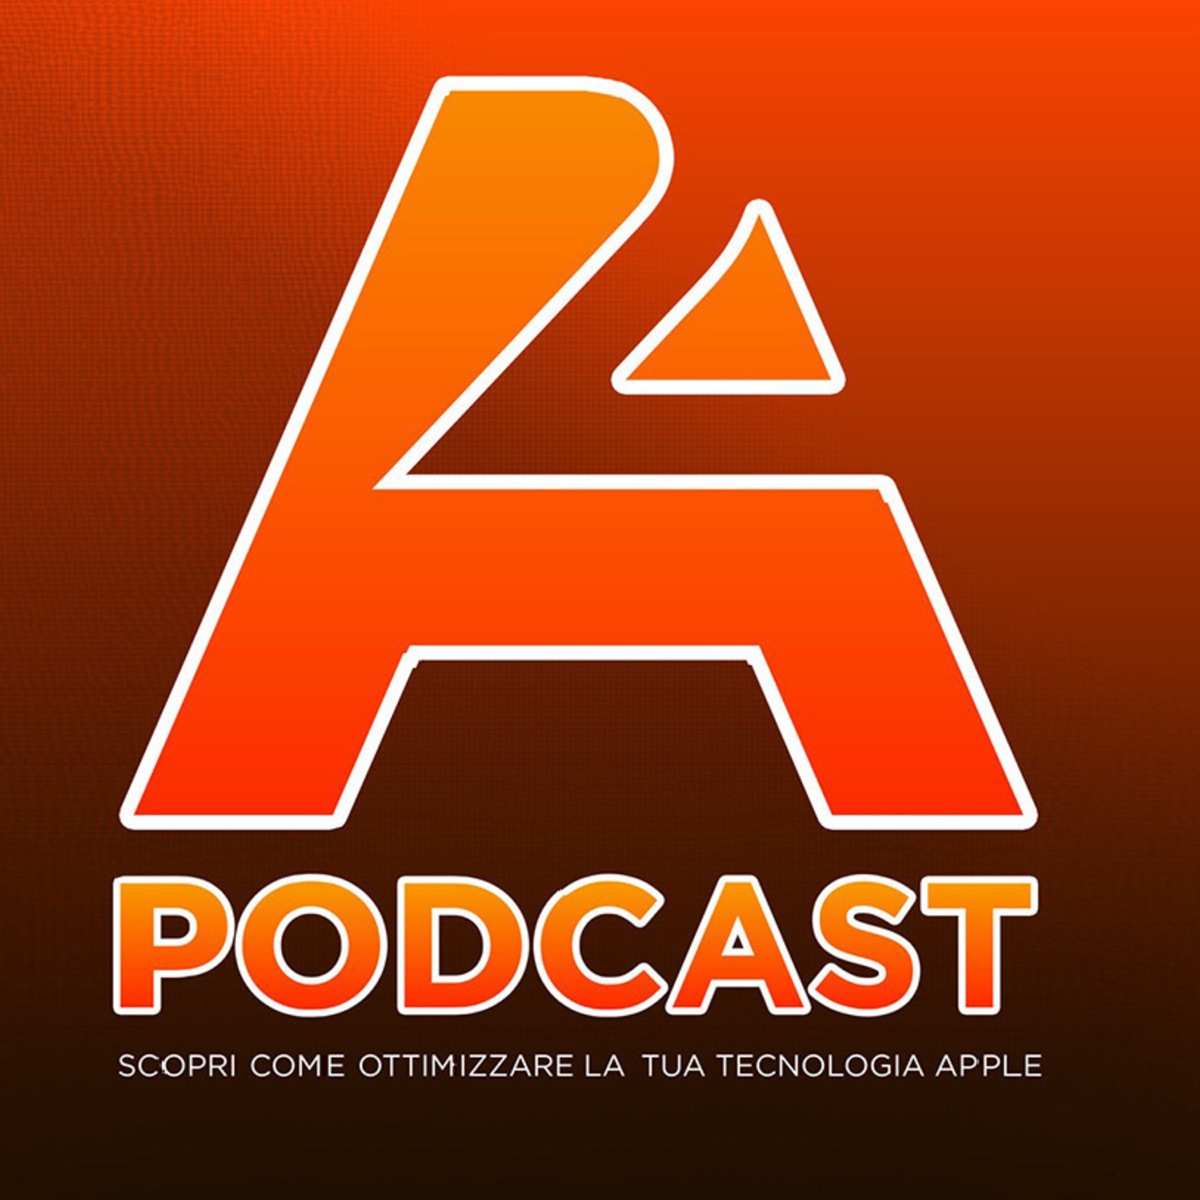 A2 – Podcast – Podtail